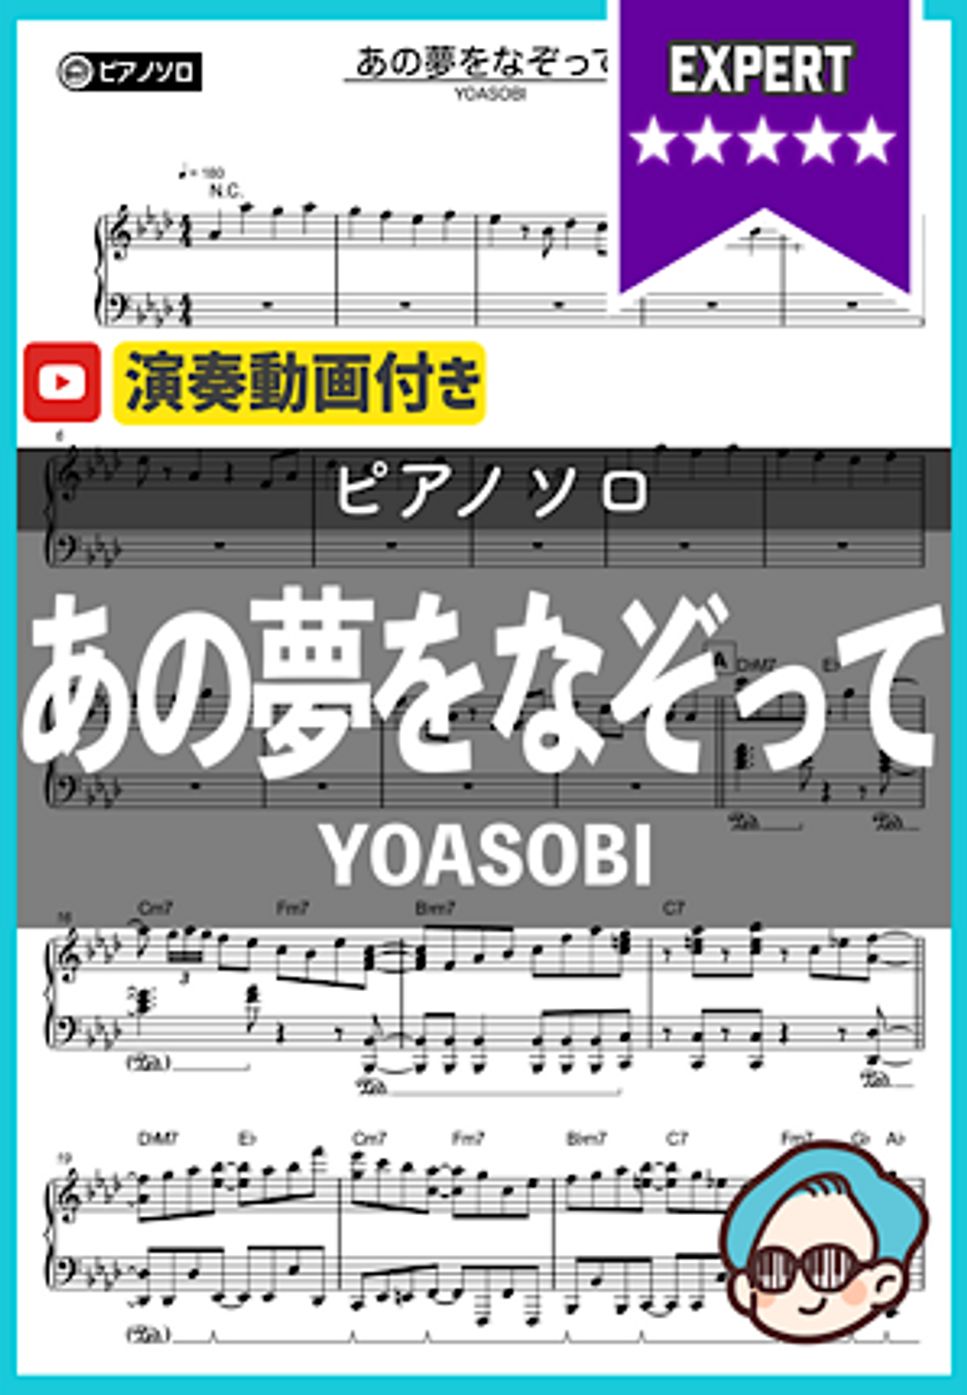 YOASOBI - あの夢をなぞって by シータピアノ